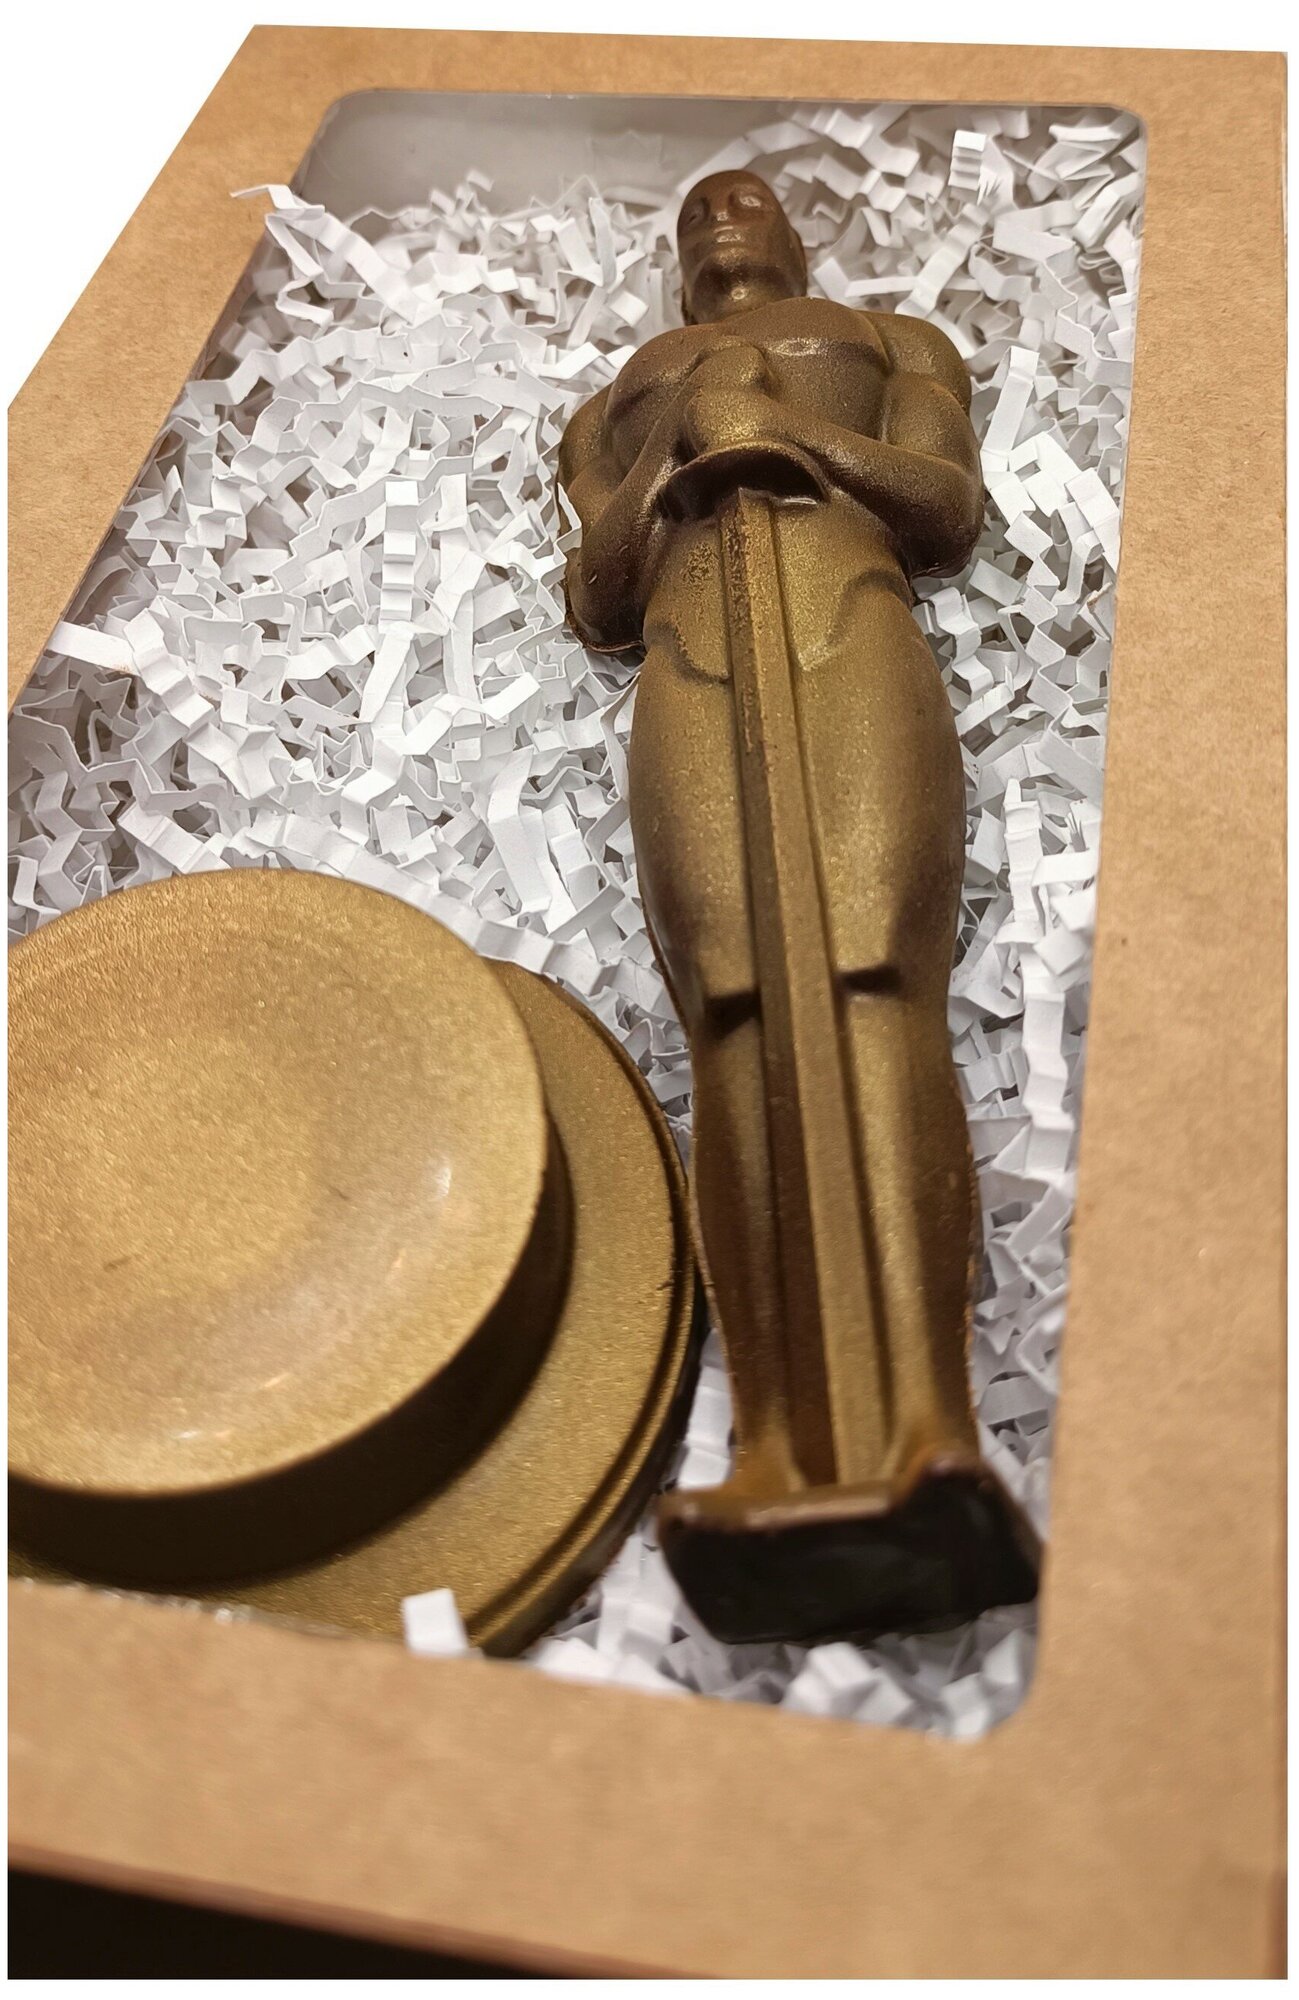 Шоколад фигурный "Оскар" 120гр / Подарочный набор шоколада / фигурный шоколад